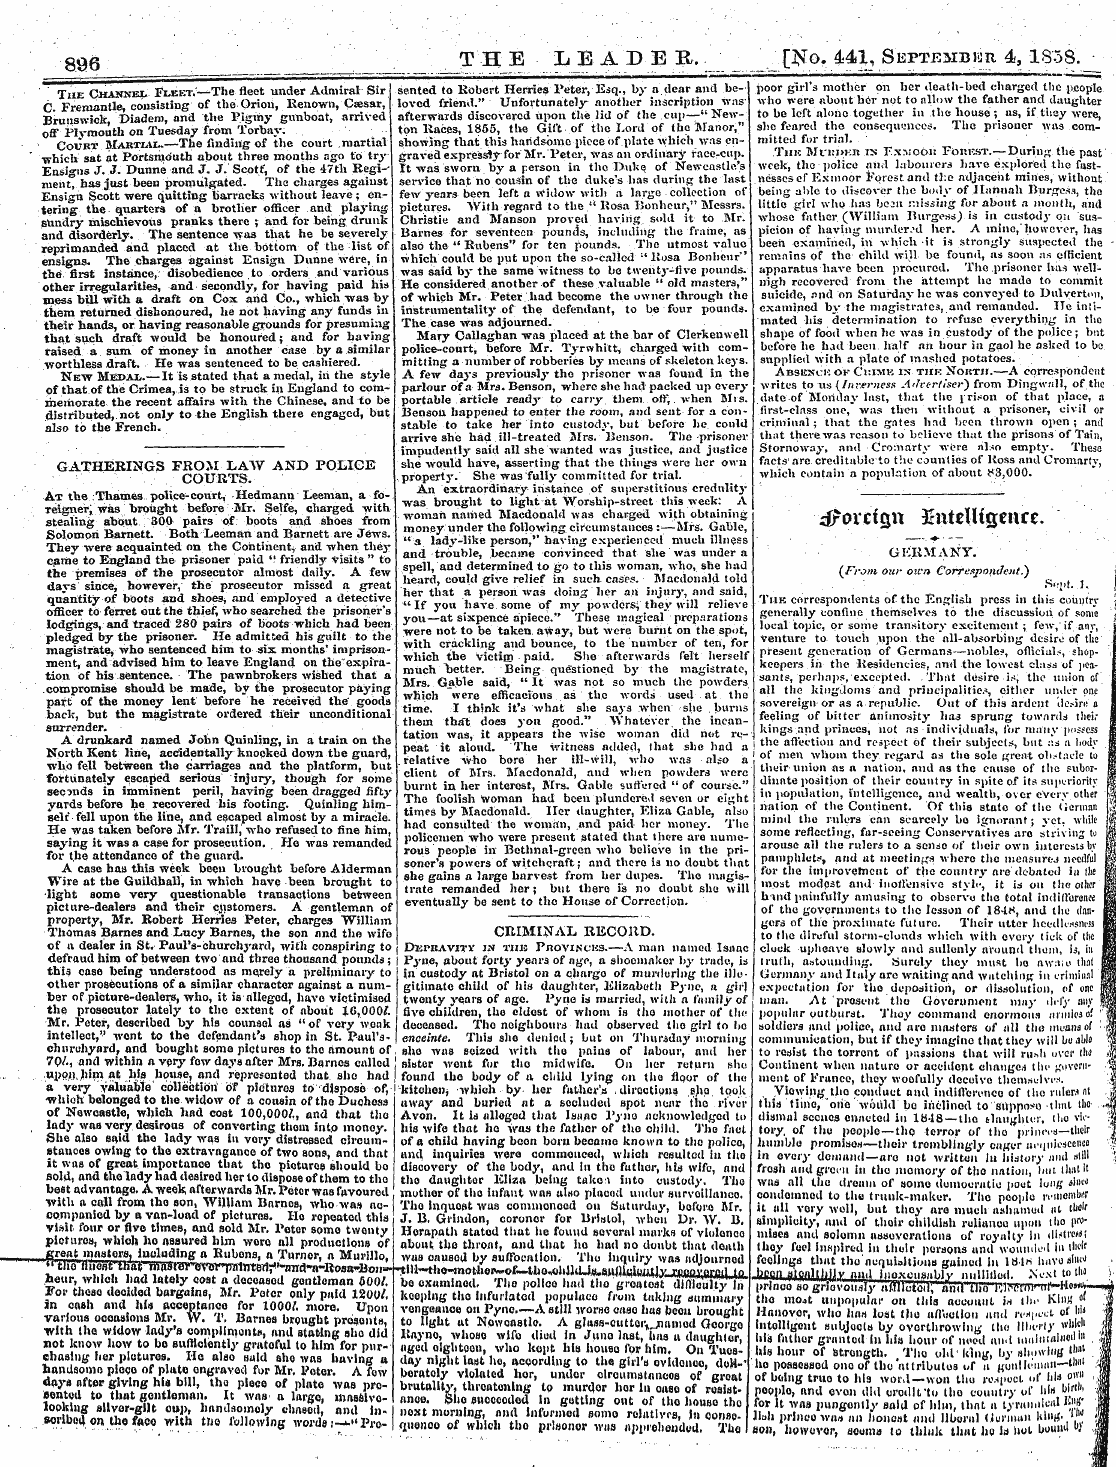 Leader (1850-1860): jS F Y, 2nd edition - Criminal Record. Dkpravitv In Tub Prtovi...